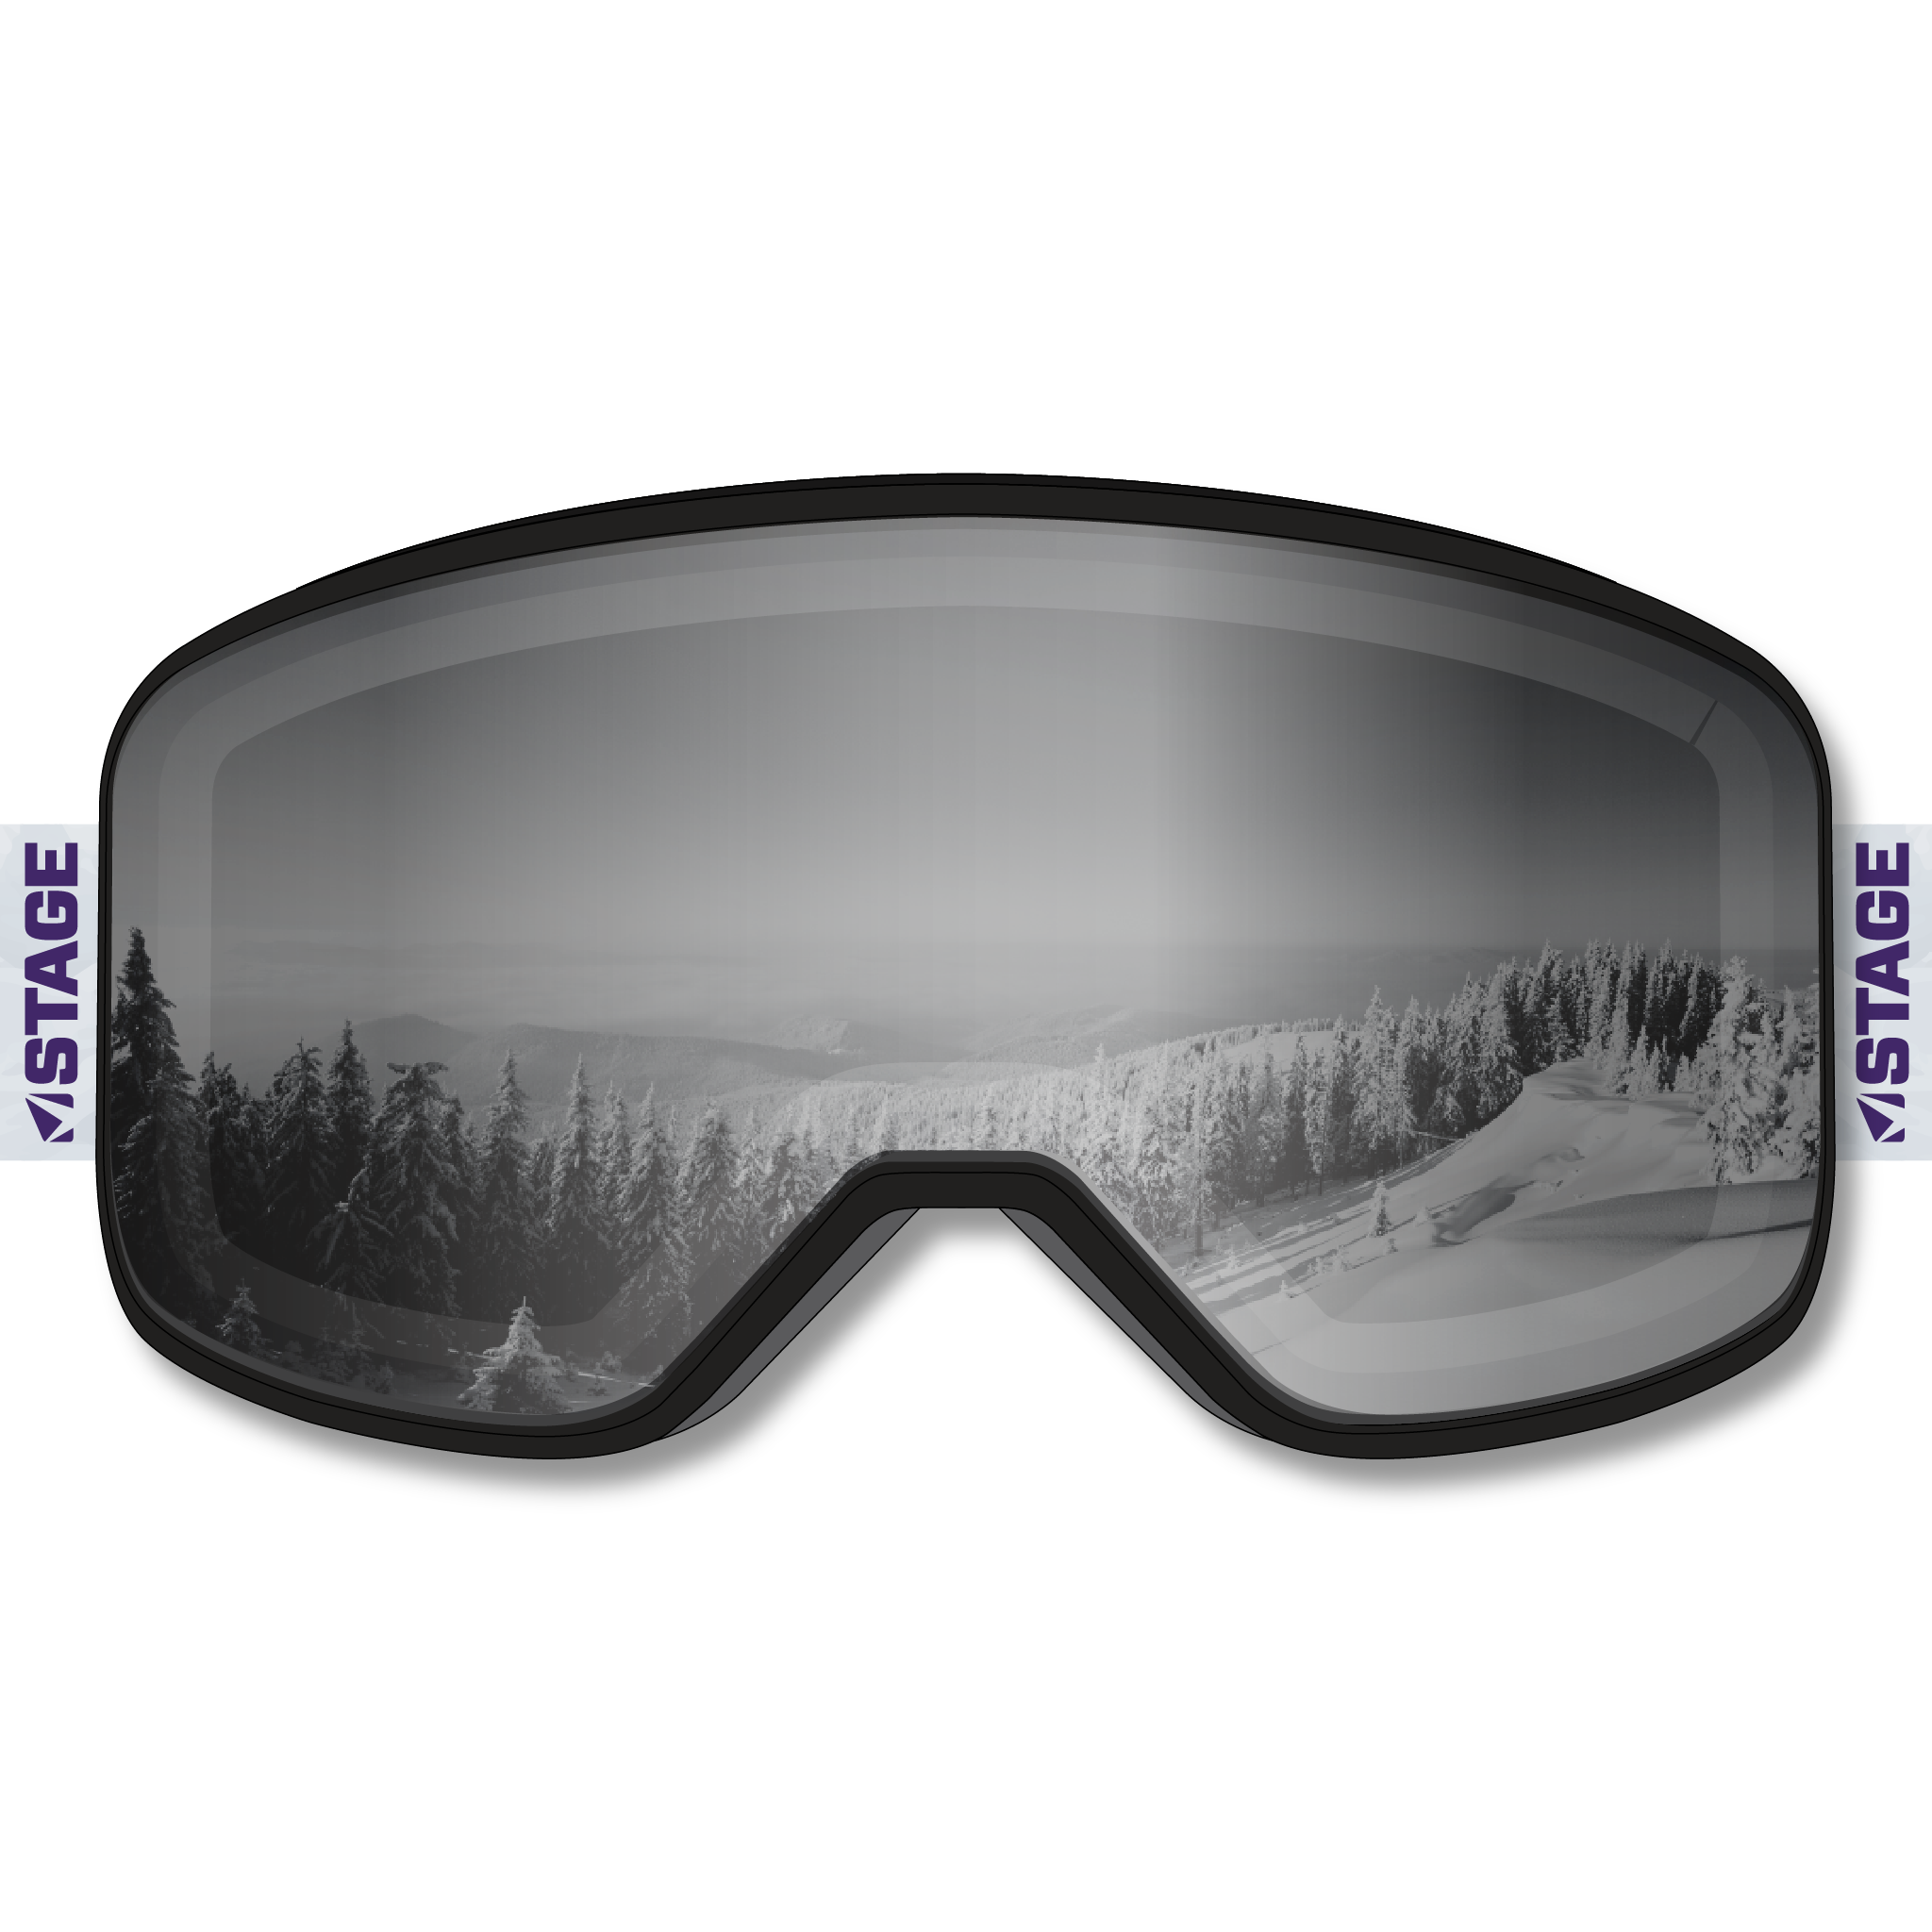 Boardslide Mission Prop Ski Goggle - Black Frame w/ Mirror Chrome Lens - Adult Universal